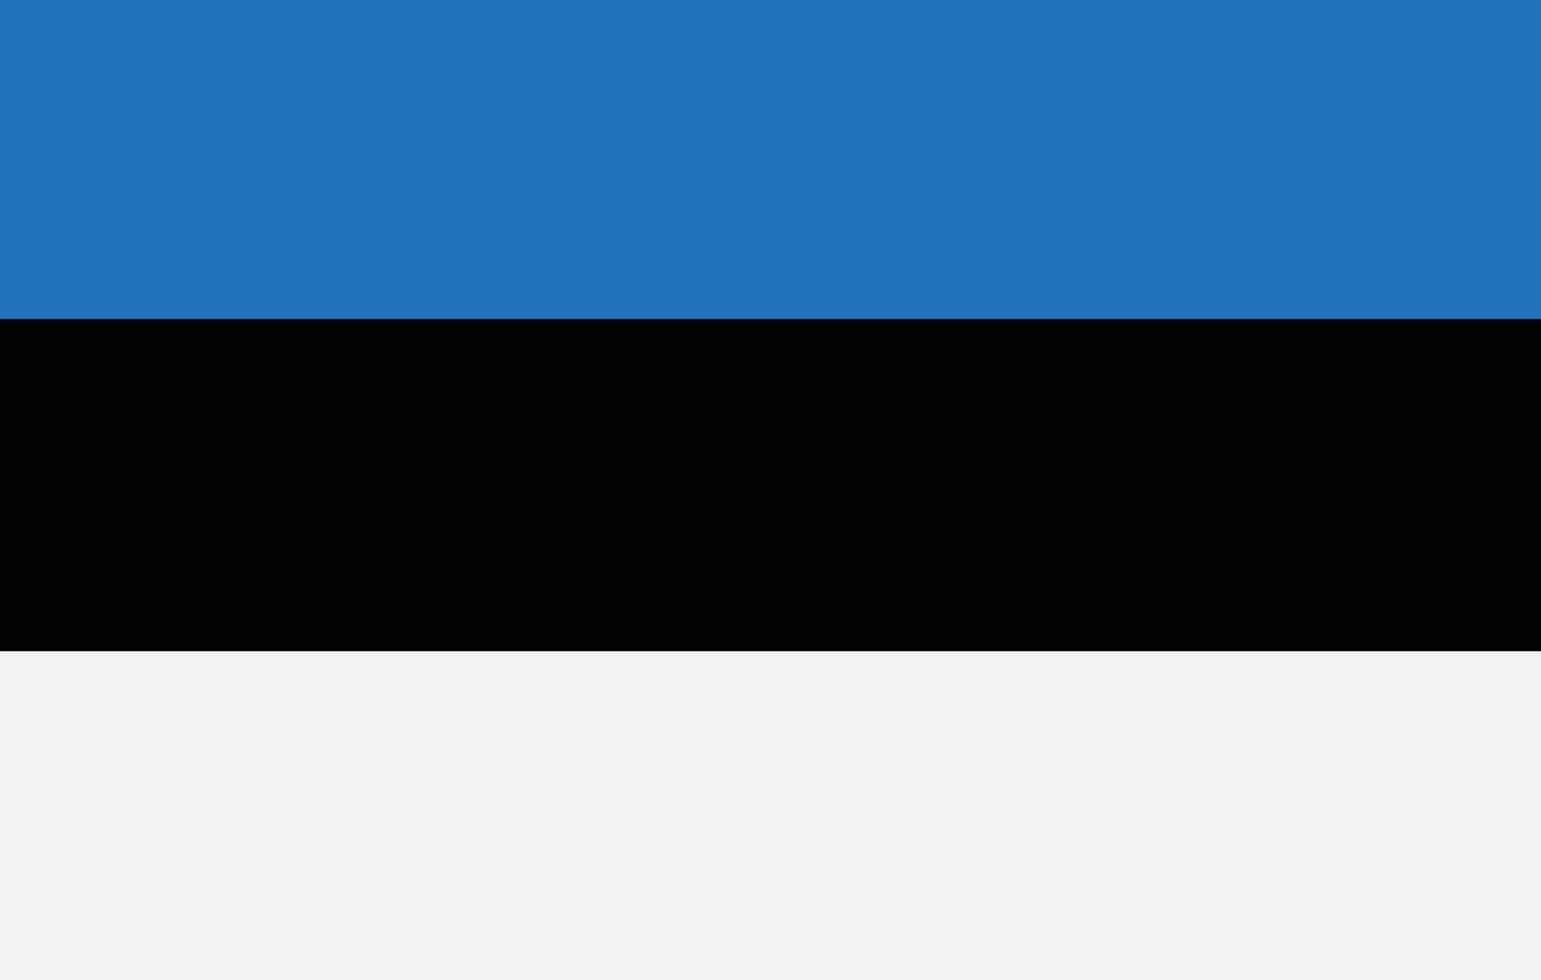 Estland-Flaggen-Vektorhand gezeichnet, Eur-Vektorhand gezeichnet vektor